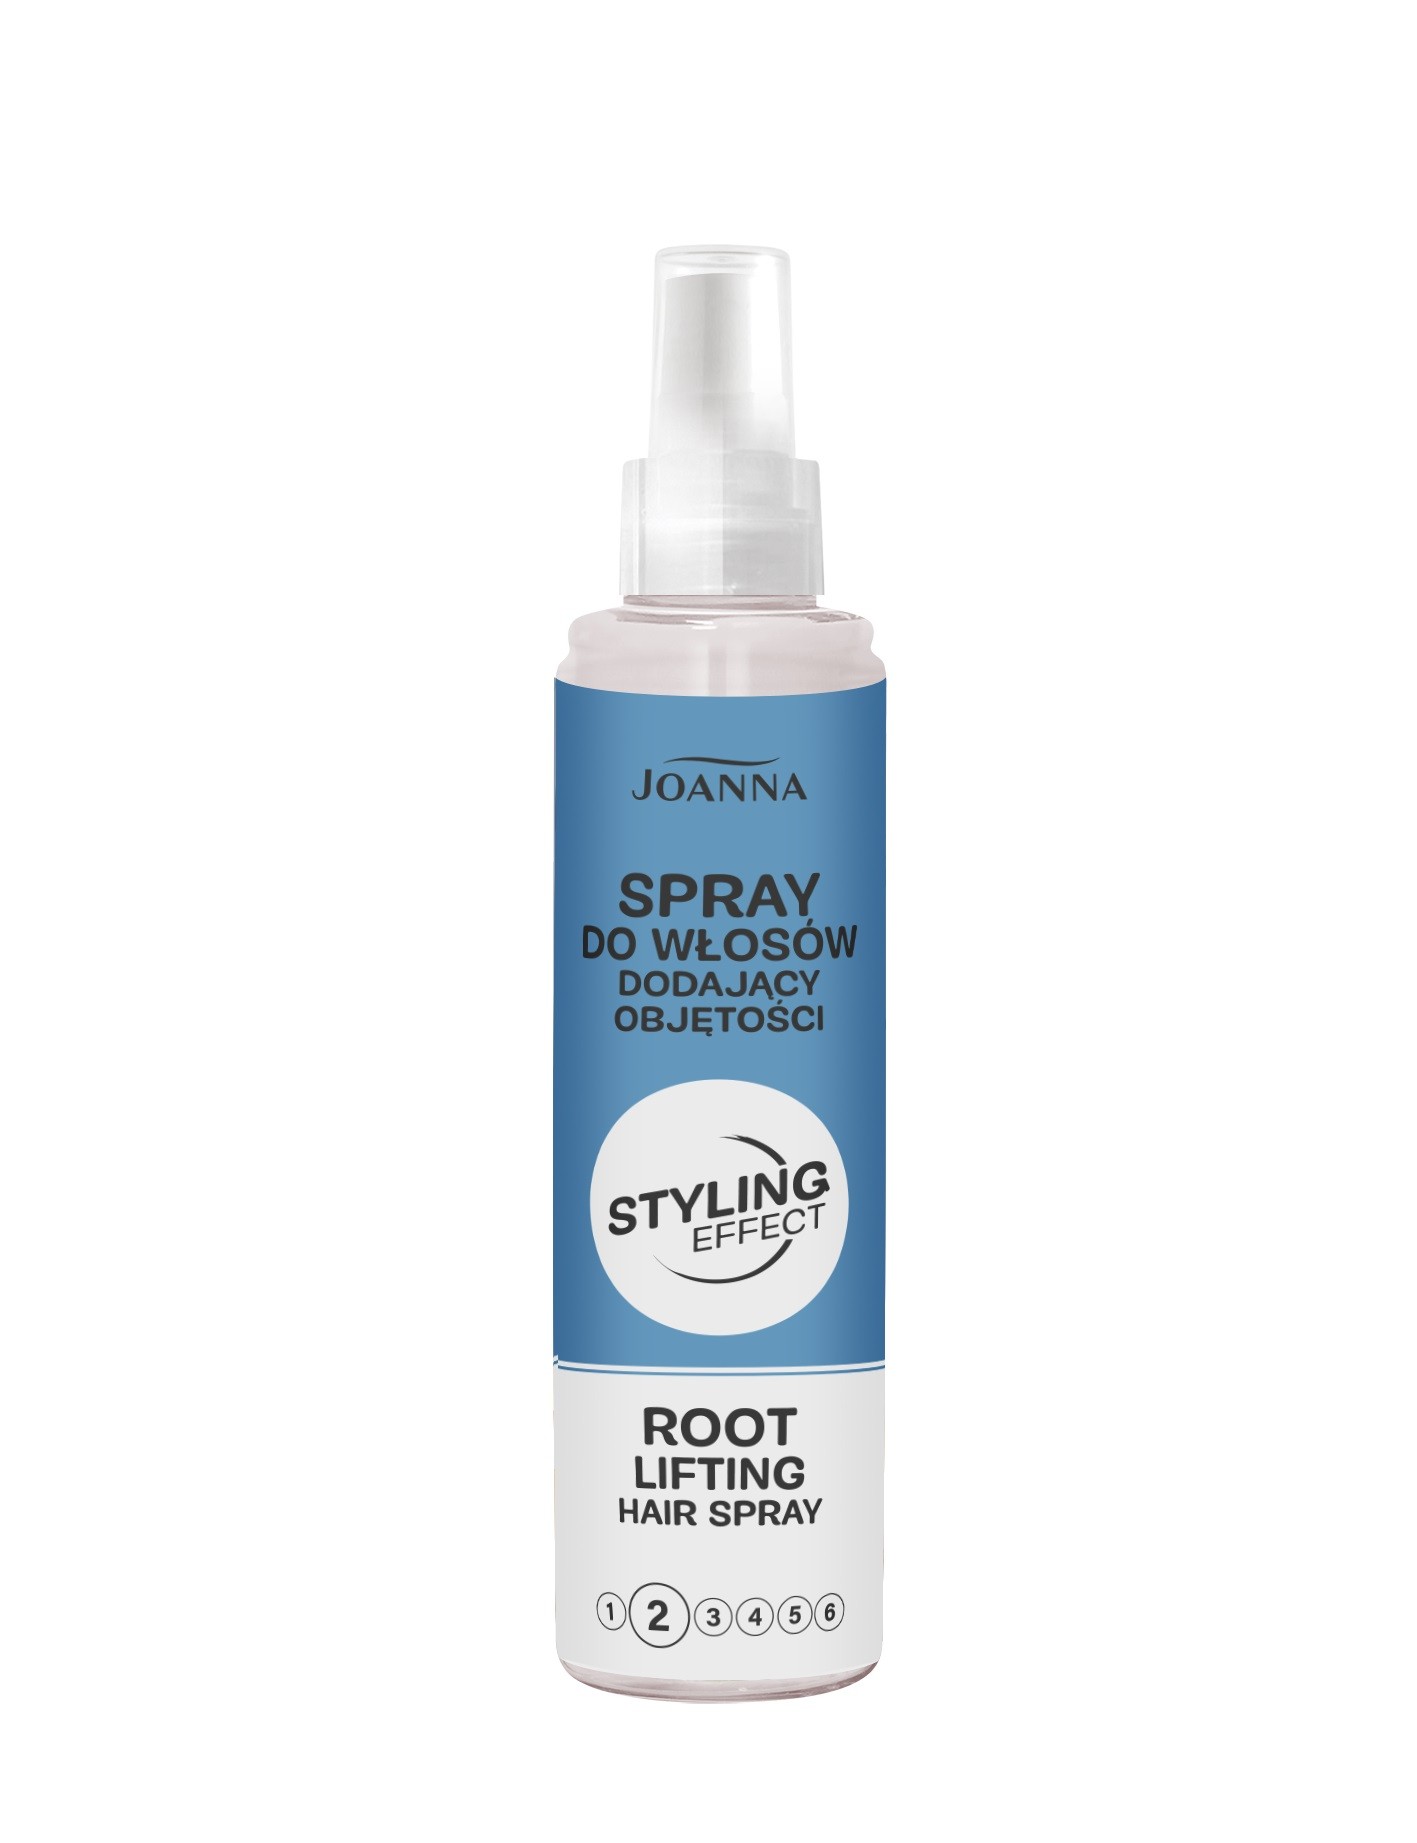 Joanna Styling Effect Spray do włosów dodający objętości 150ml